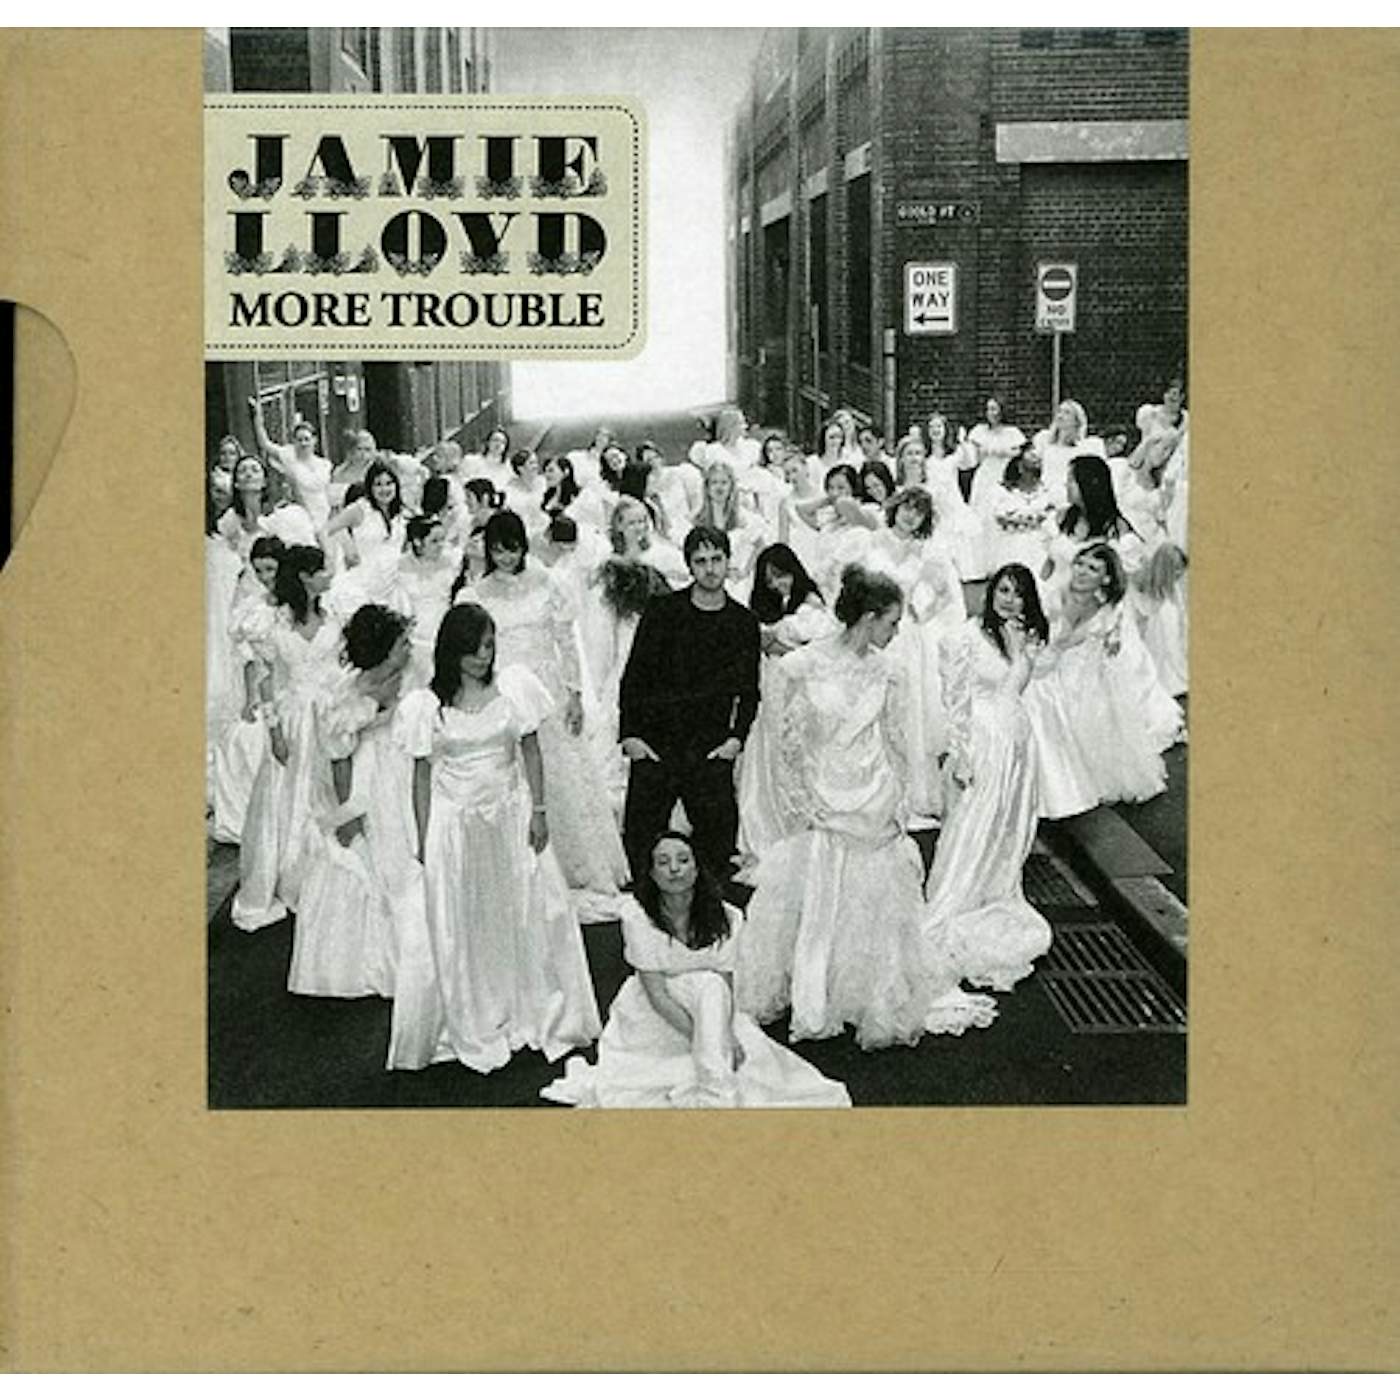 Jamie Lloyd MORE TROUBLE - THE ALBUM CD